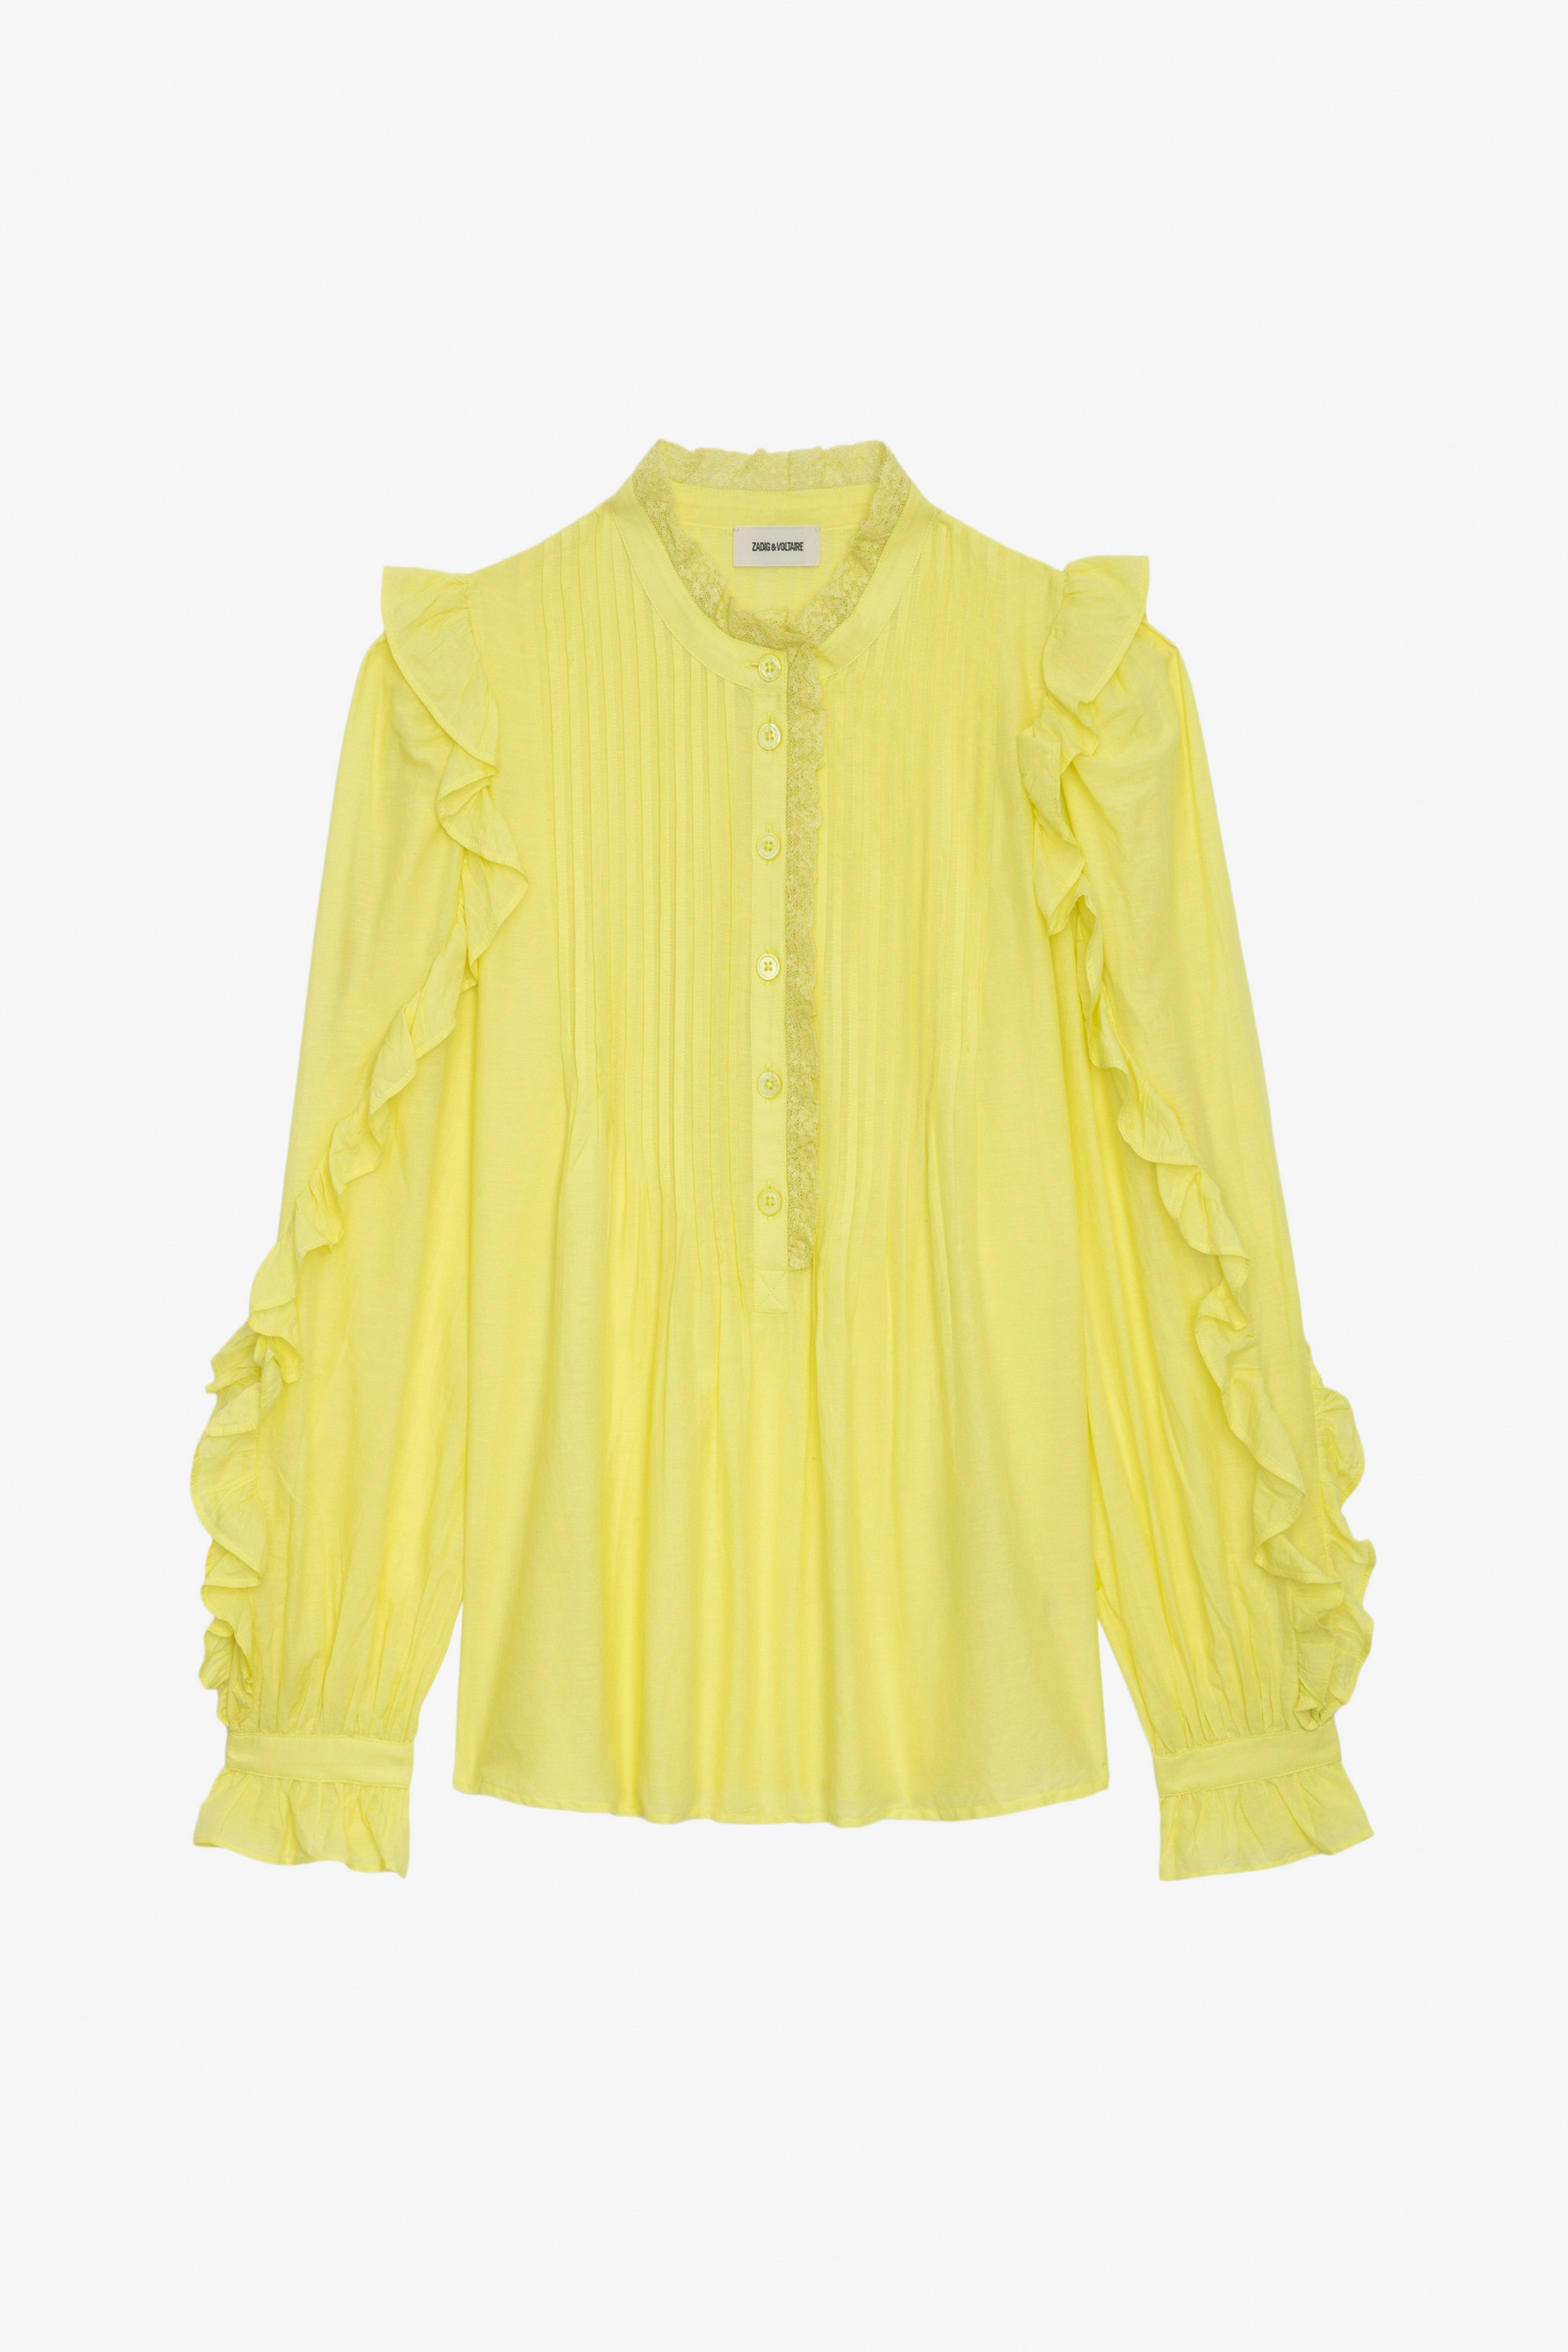 Blusa Timmy - Blusa de algodón en color amarillo claro con mangas largas y volantes.